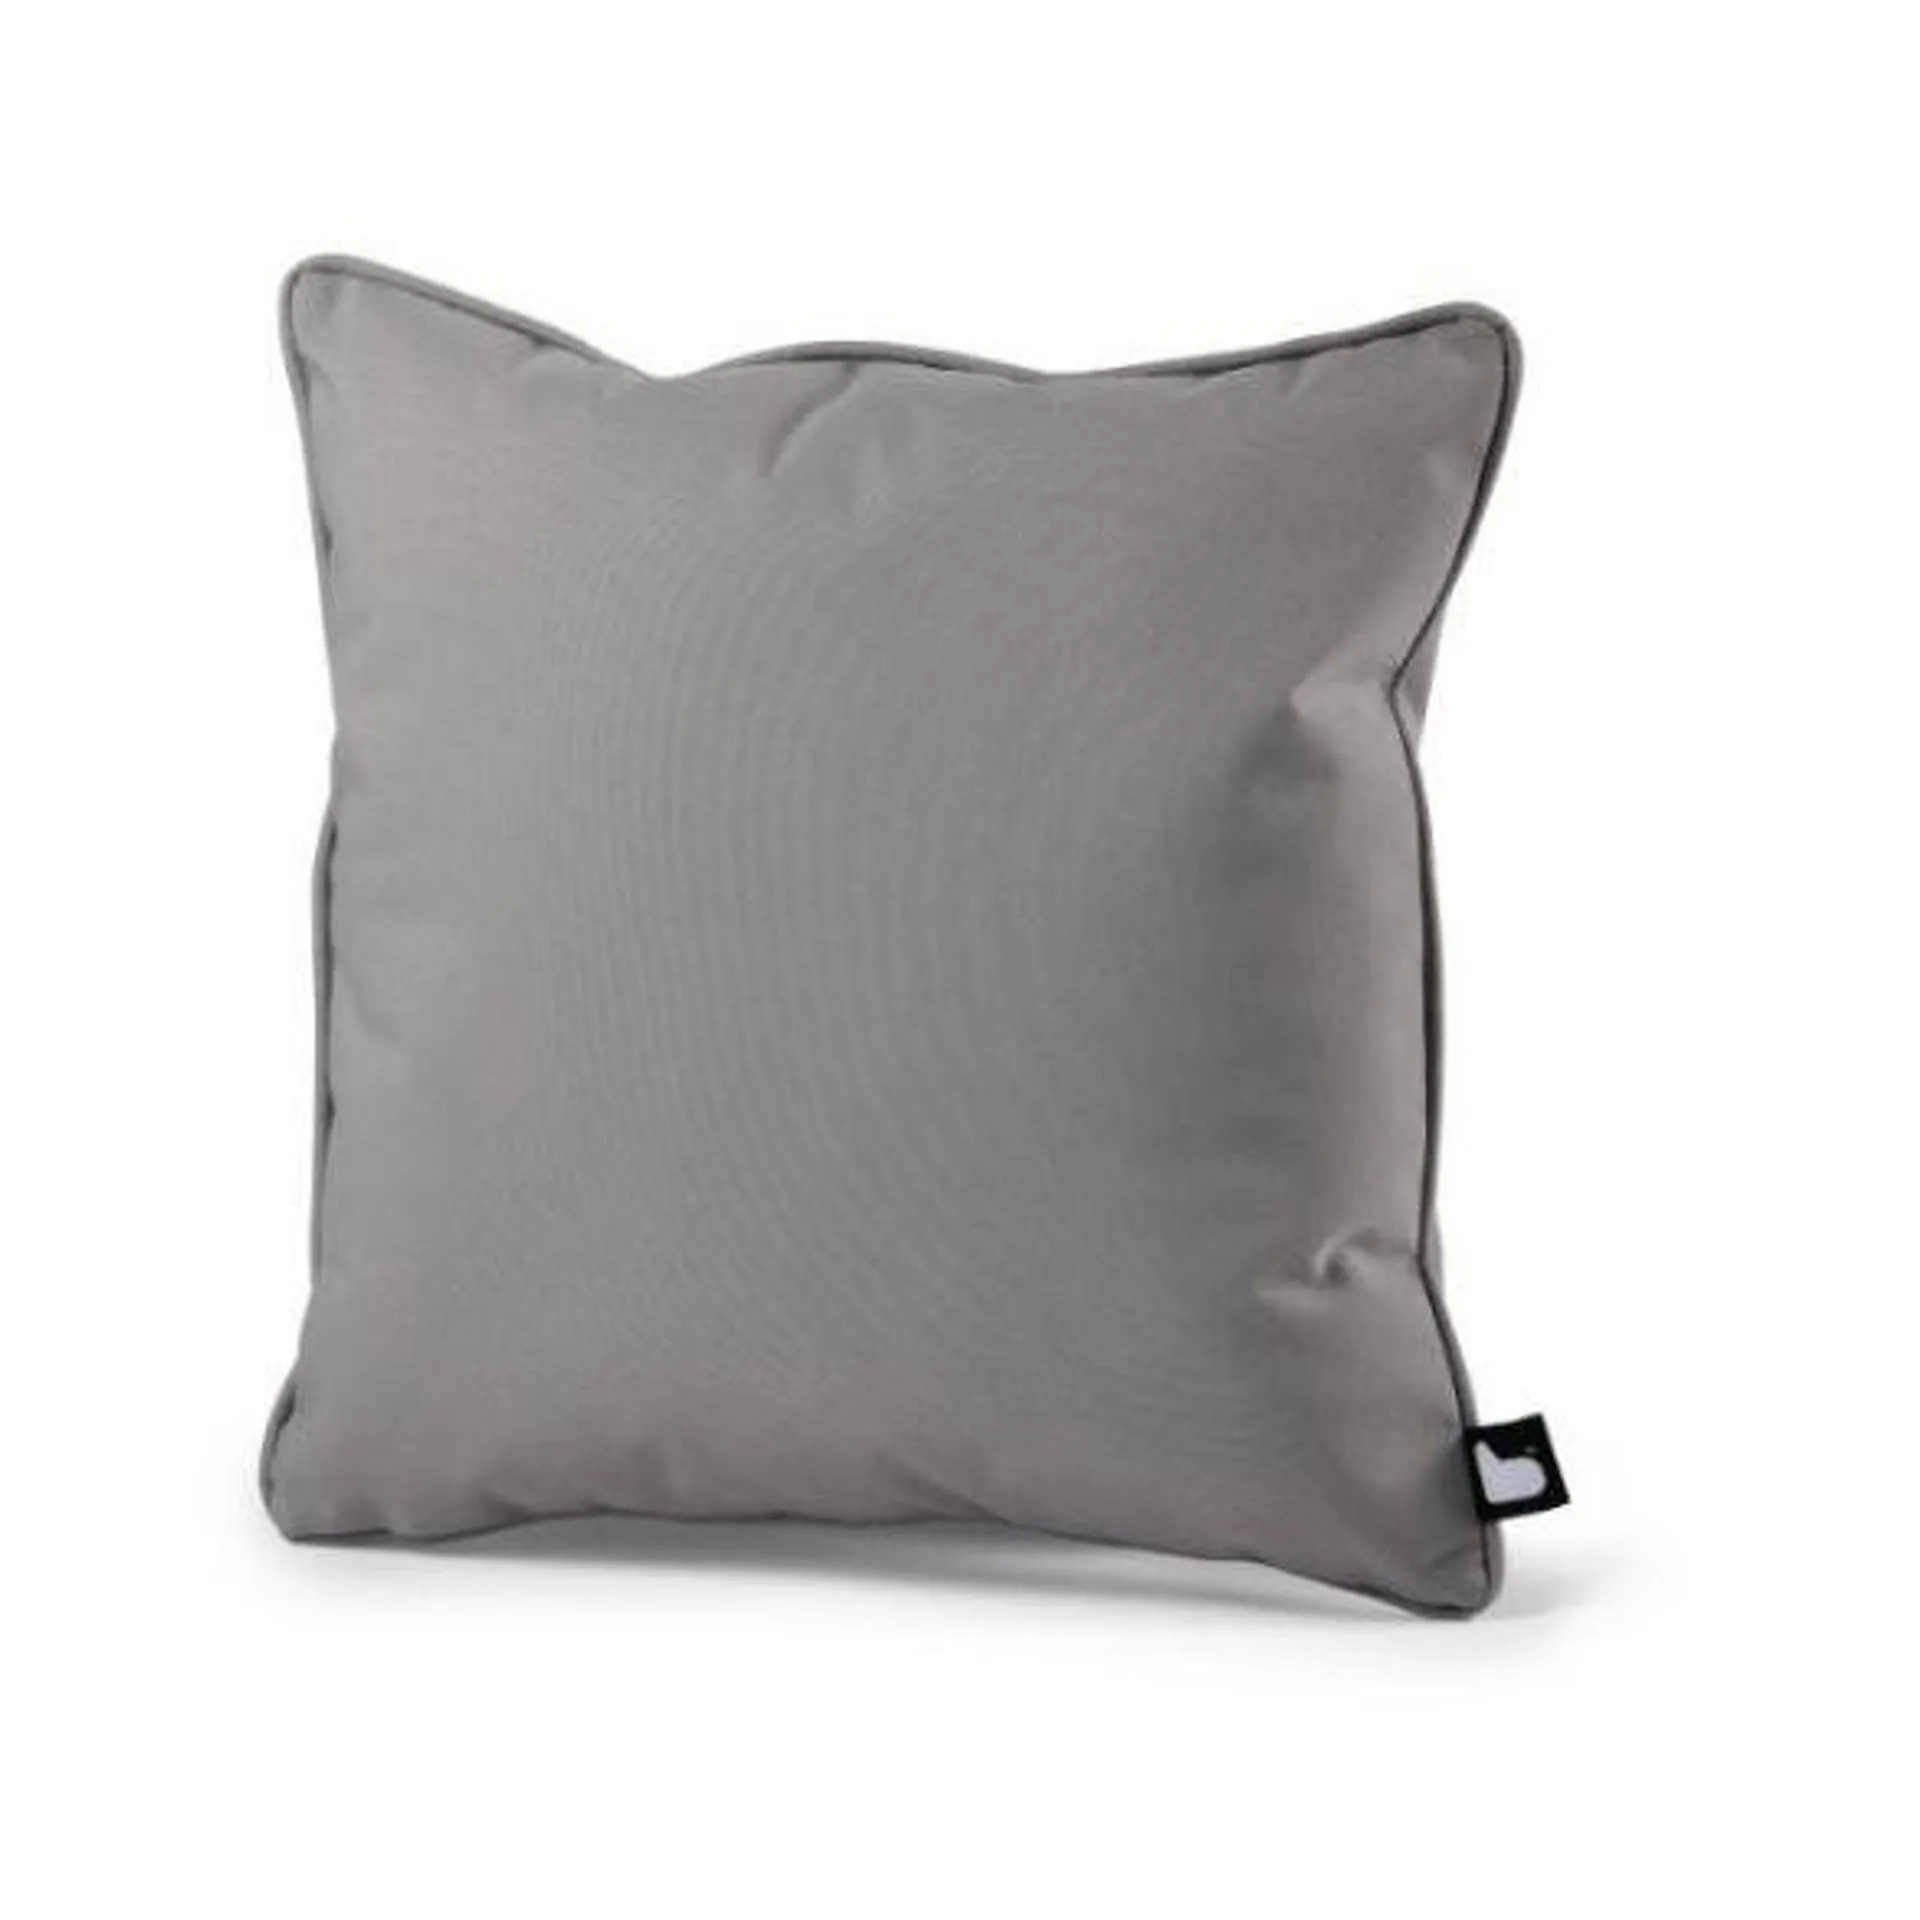 Extreme Lounging B Cushion Grey